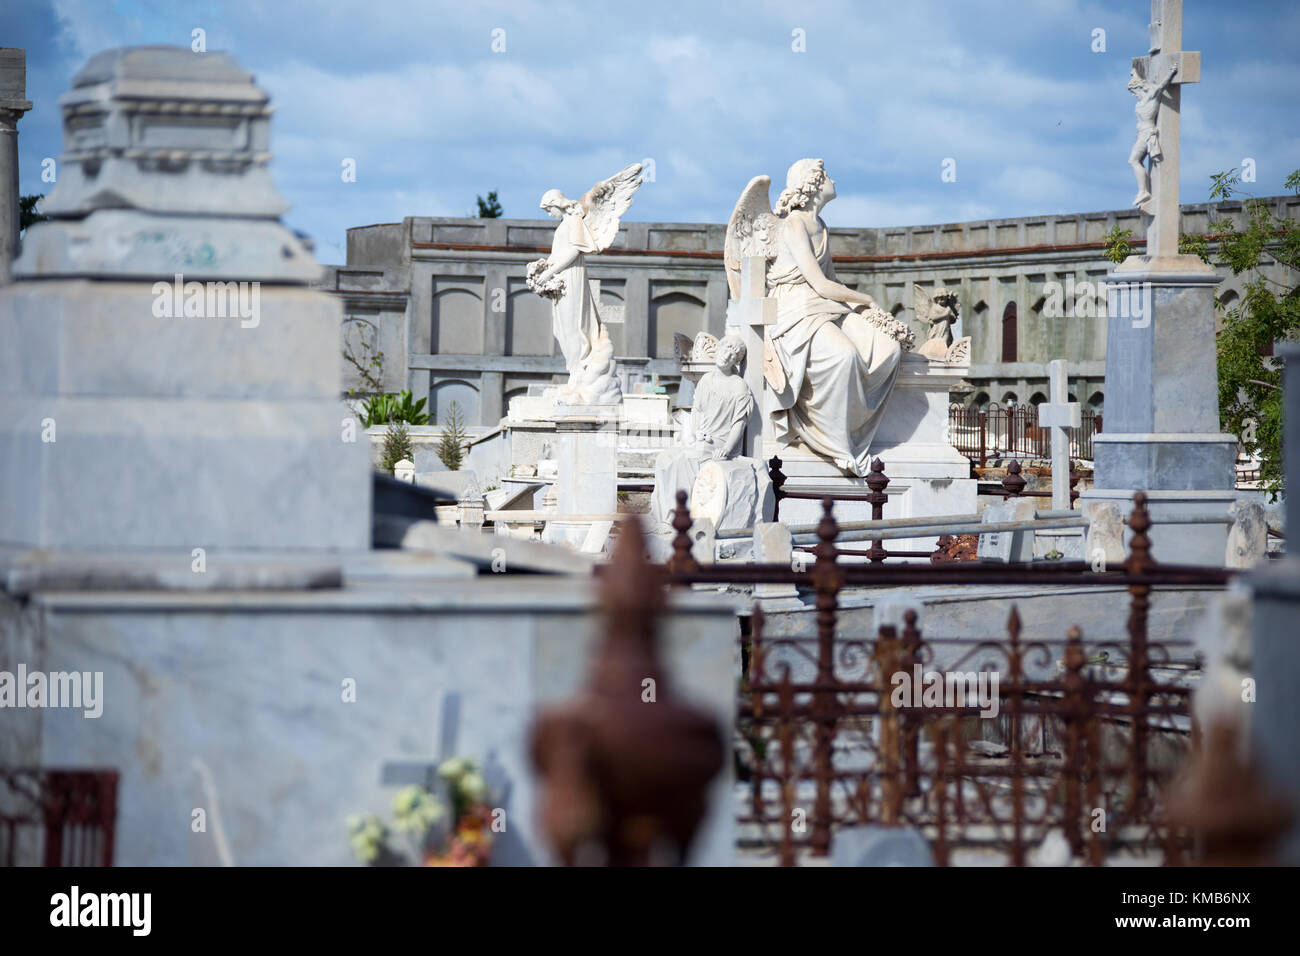 Cementerio la Reina, Historic Cemetery in Cienfuegos, Cuba Stock Photo